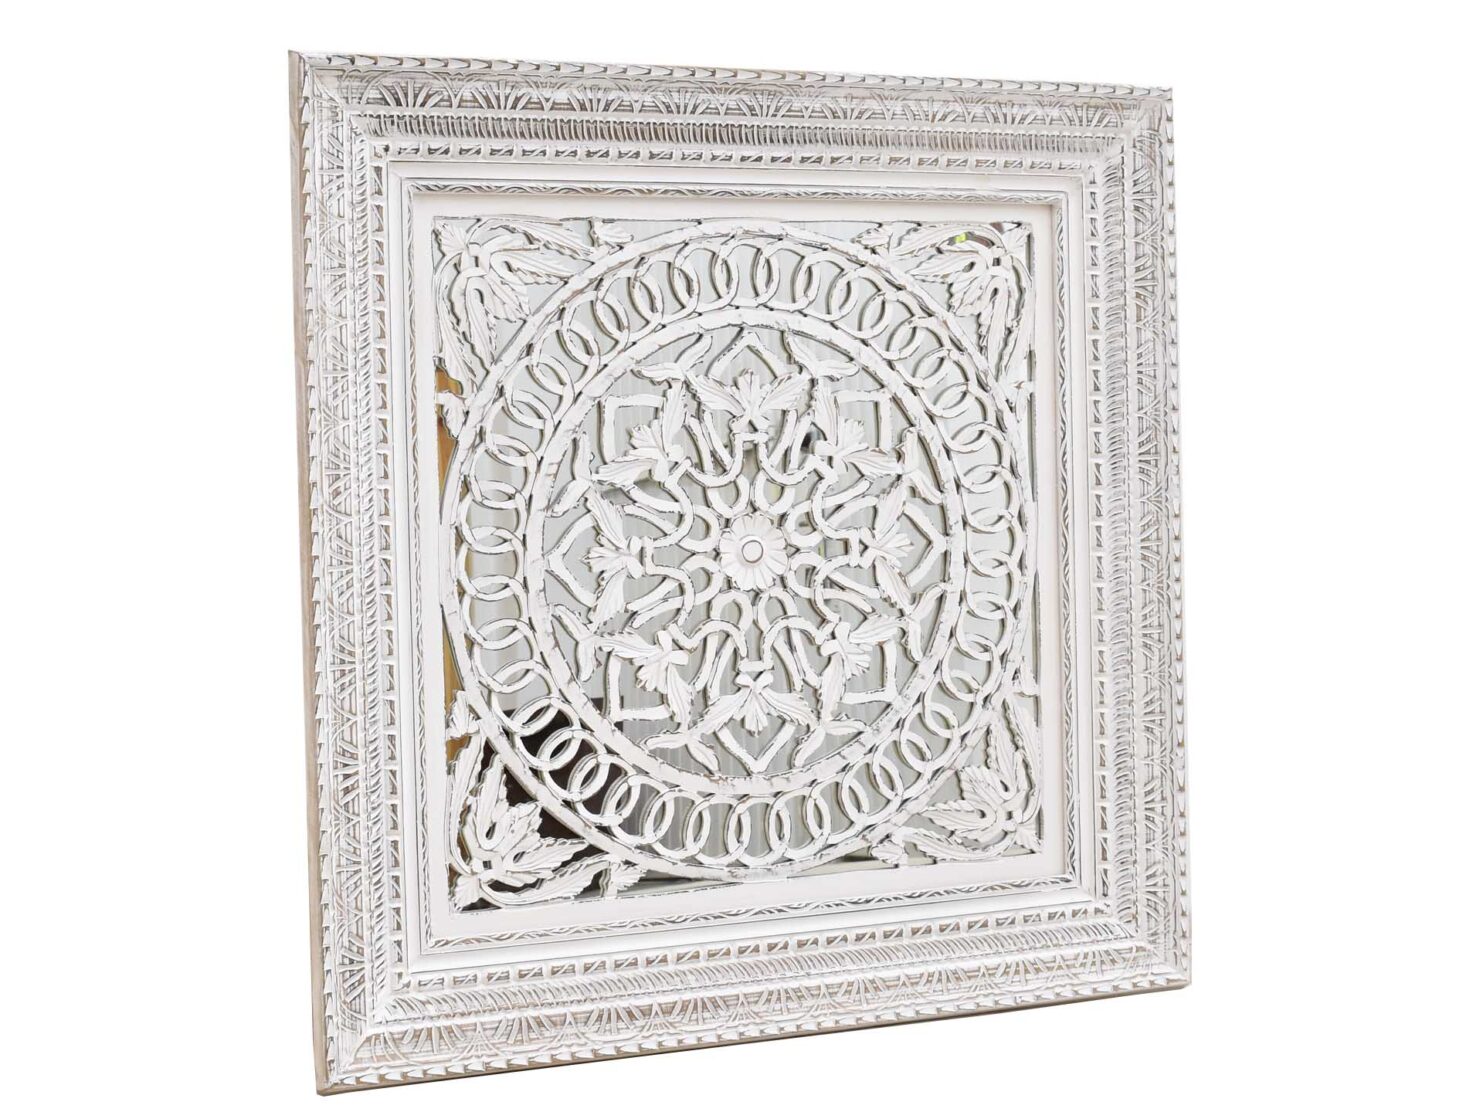 dekoracyjny panel scienny bielony przecierany z lustrem azur przestrzenny